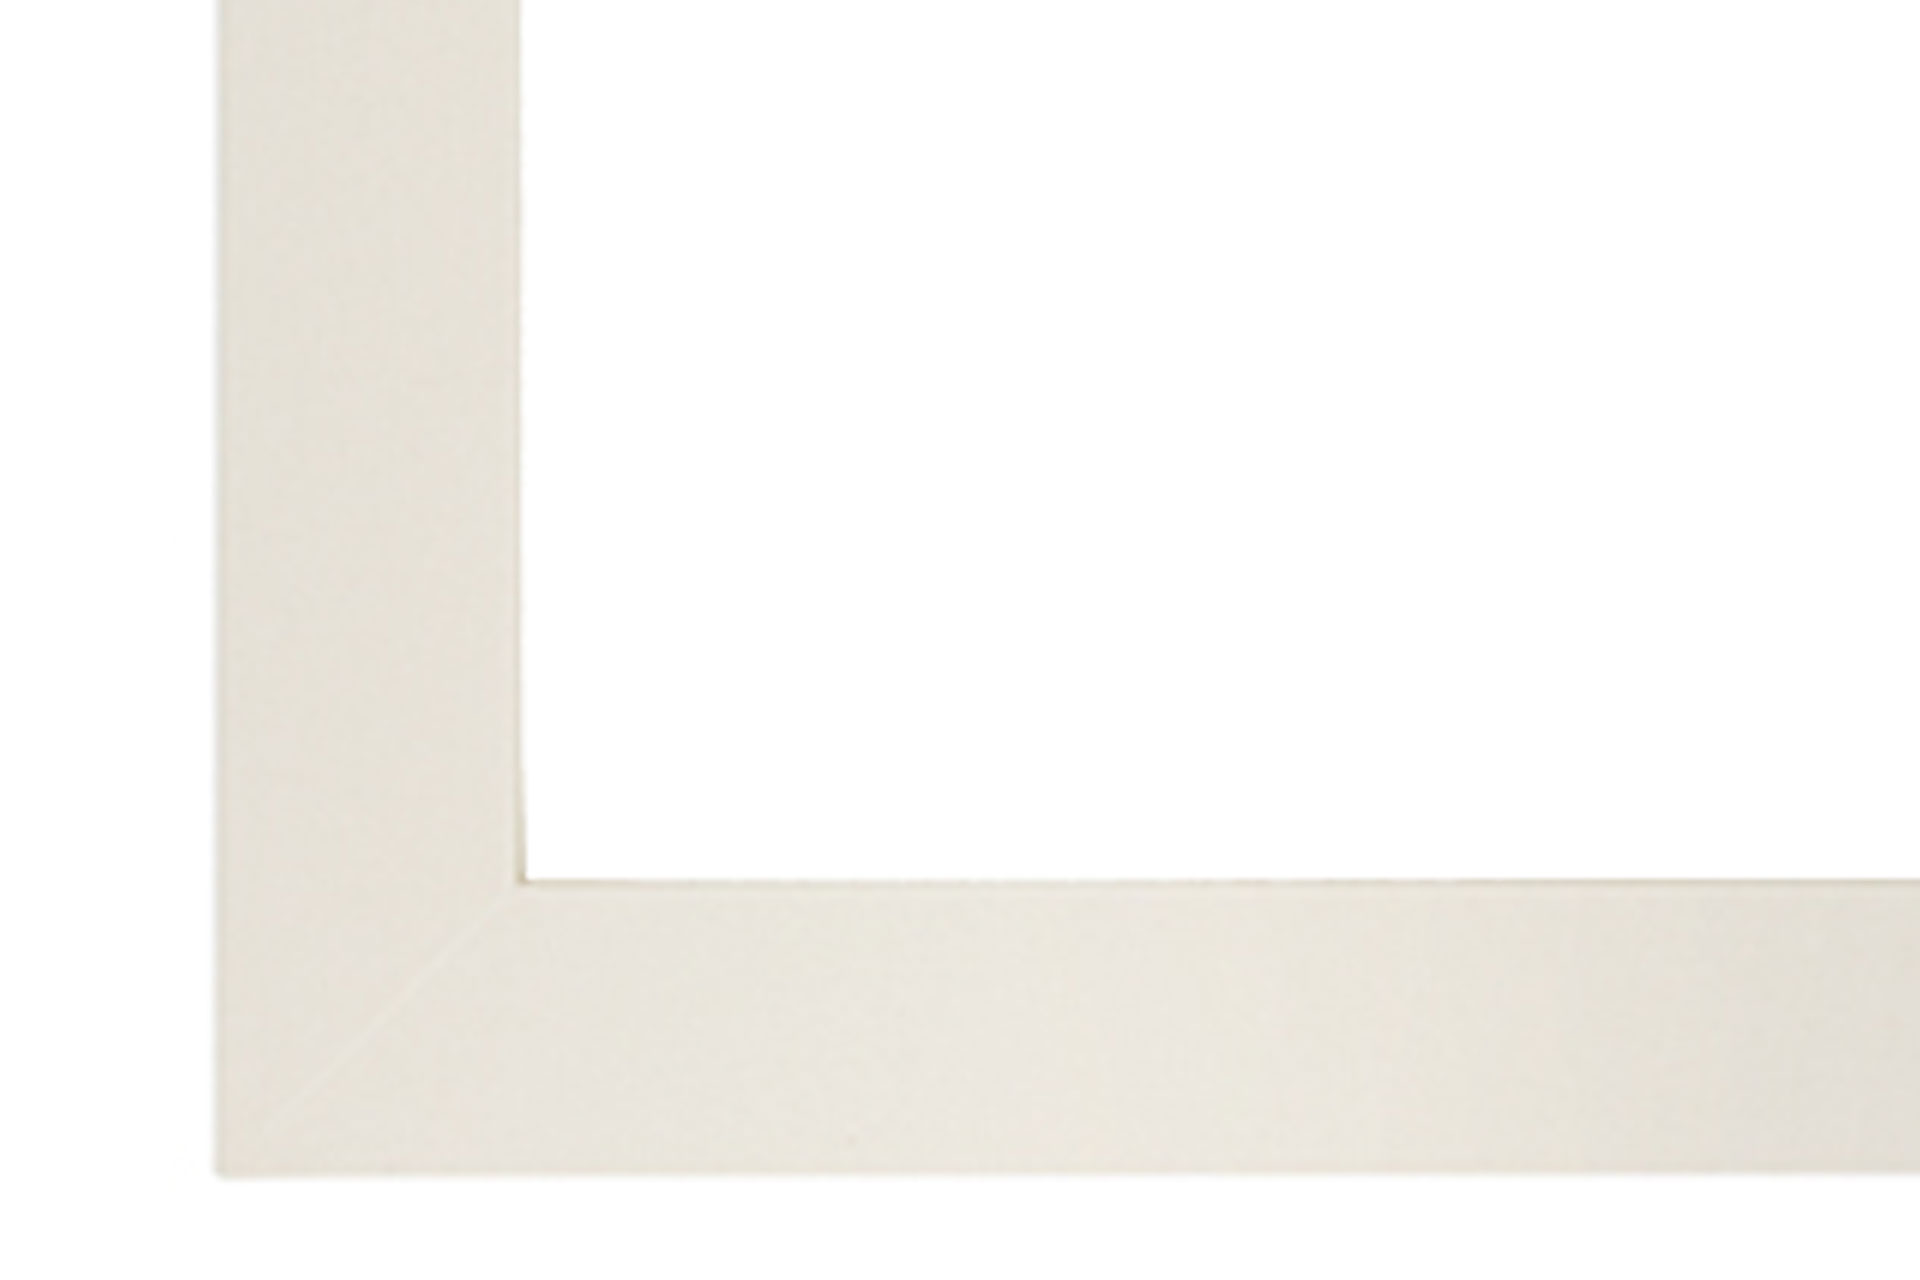 Wandspiegel Modell Kauni,  Finishing: white wax, Design/Farbe: Vintage cream, Spiegel: Facettenspiegel, Form: rechteckig, Material: Holz, Raum: Innenbereich, Style: modern, Herstellung: by ASR-Rahmendesign, Produktkategorie: Vintage, Ecke